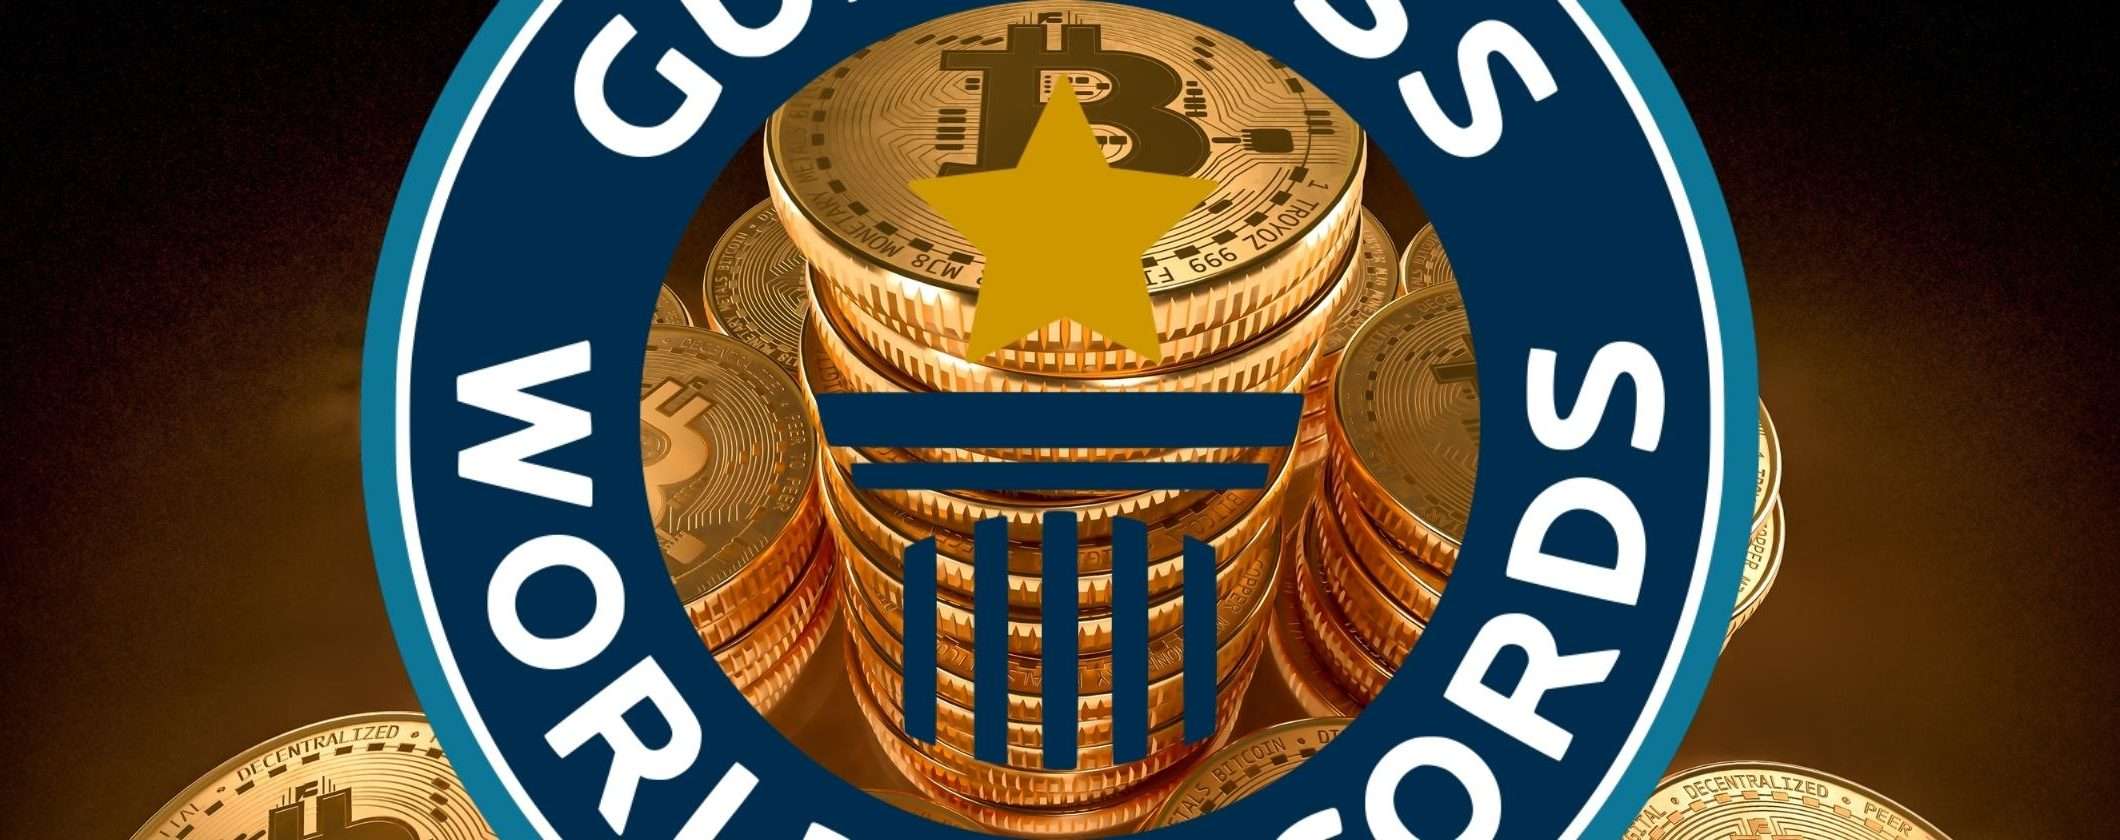 Bitcoin è ufficialmente nei Guinness World Records